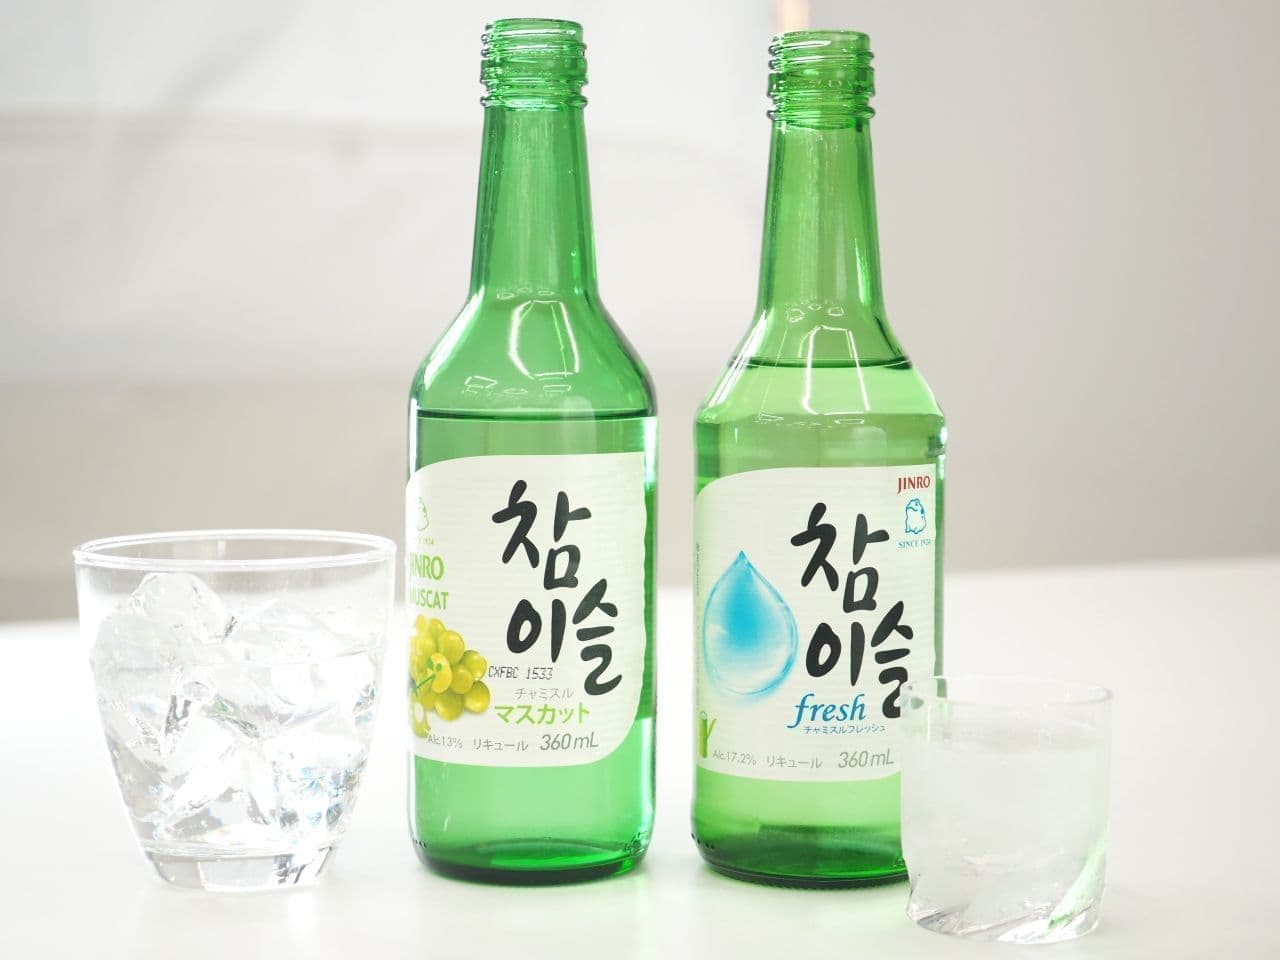 世界で愛飲される韓国のお酒「チャミスル」